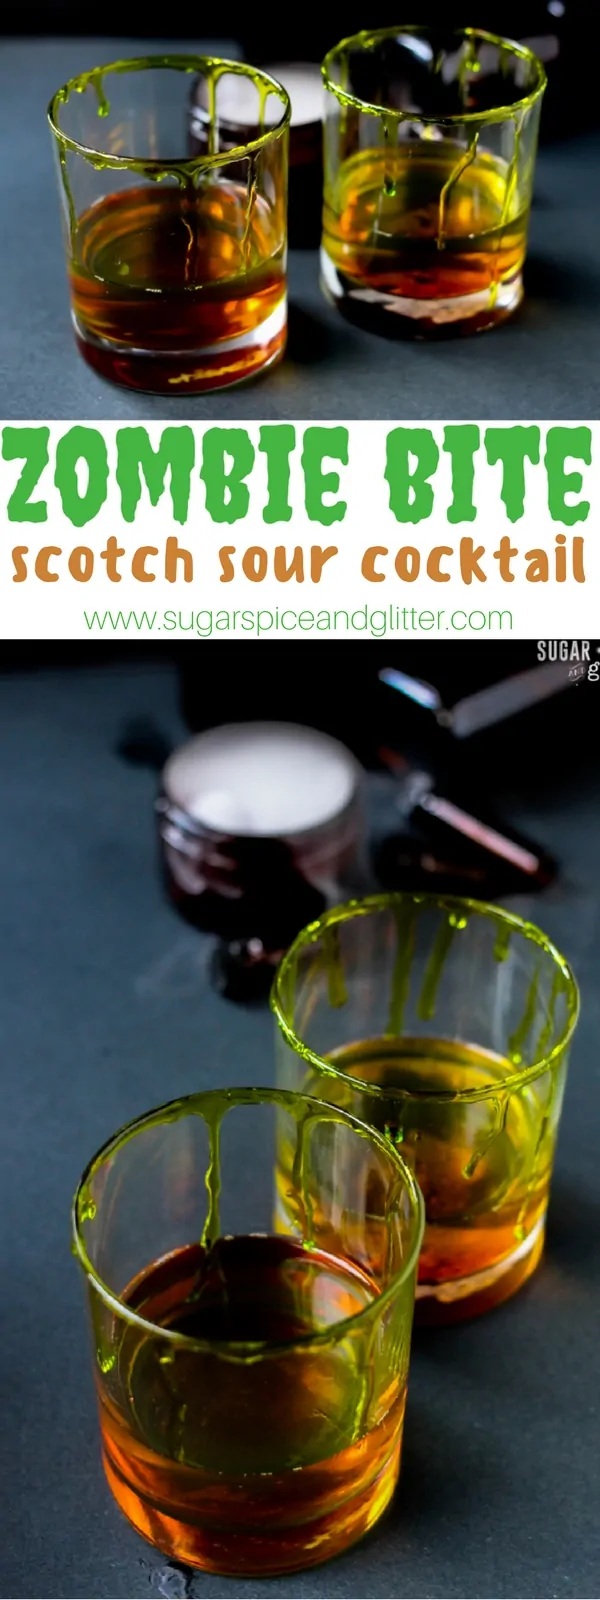 Zombie Kiss Scotch Sour Cocktail